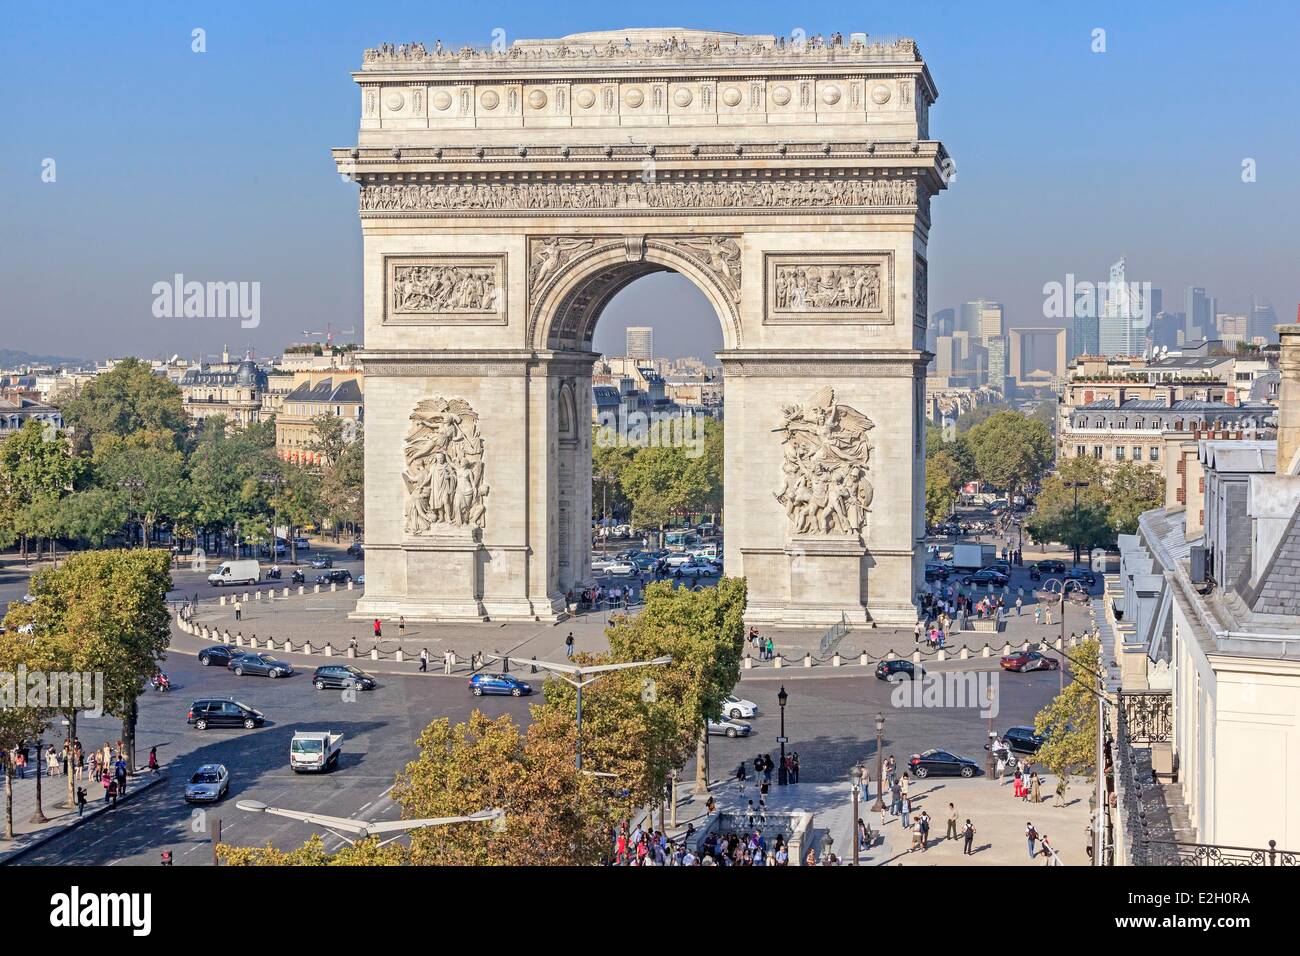 France Paris Arc de Triomphe see top end of Champs Elysees avenue Stock Photo